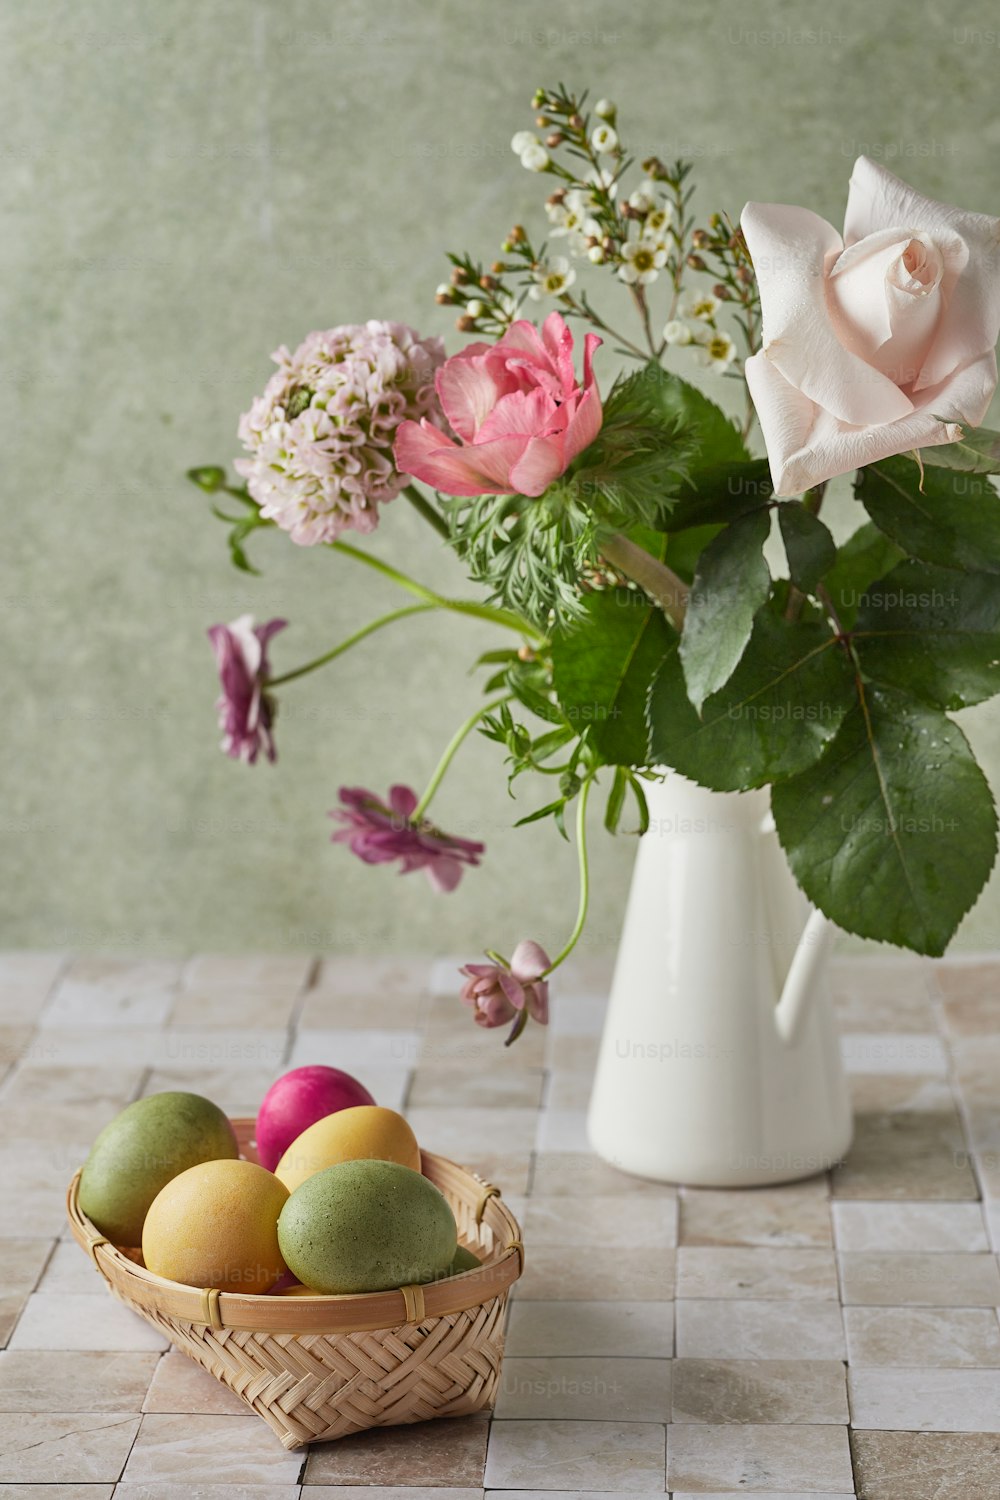 Una cesta de frutas junto a un jarrón de flores